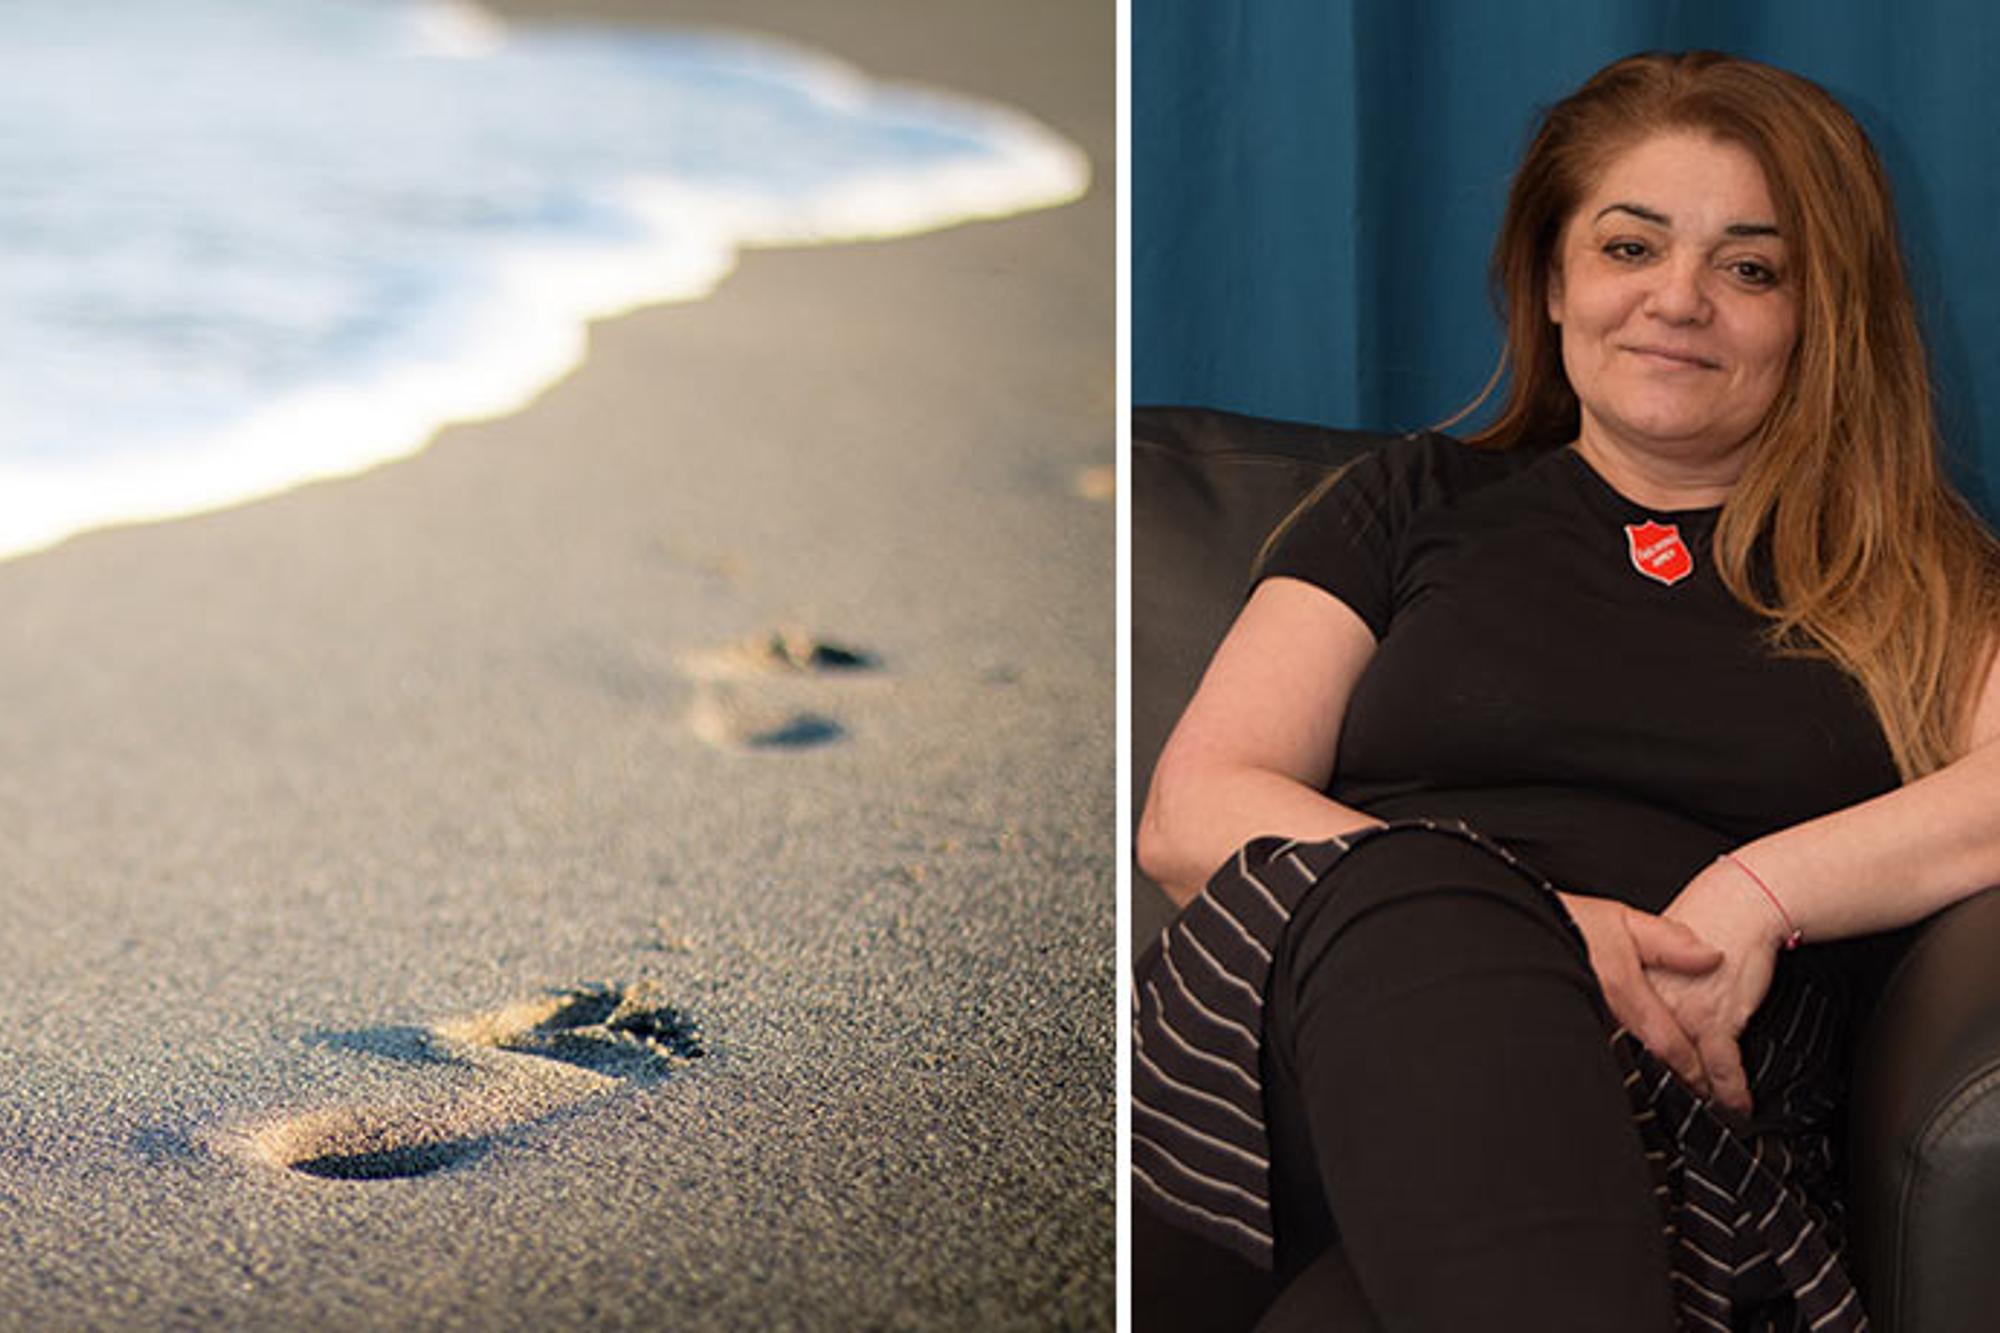 Till vänster: Ett fotspår i sanden vid havet. Till höger: Porträttbild av Günsen Cezmil som sitter i en soffa och ler mot kameran.